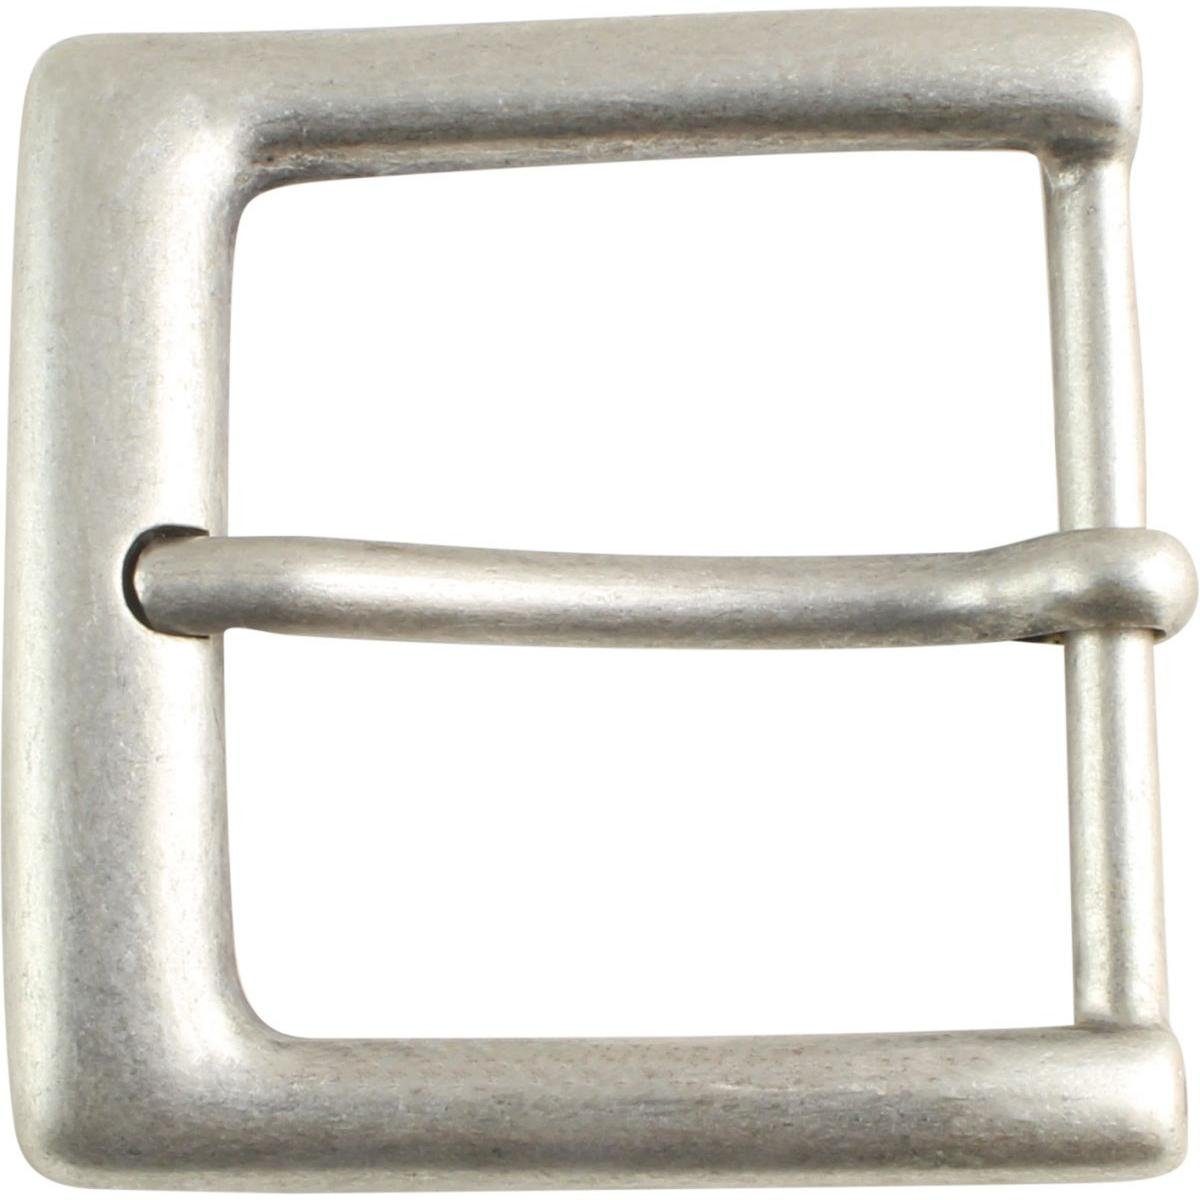 BELTINGER Gürtelschnalle 5,0 cm - Gürtelschließe 50mm - Dorn-Schließe - Für Gürtel bis zu 5cm B Altsilber